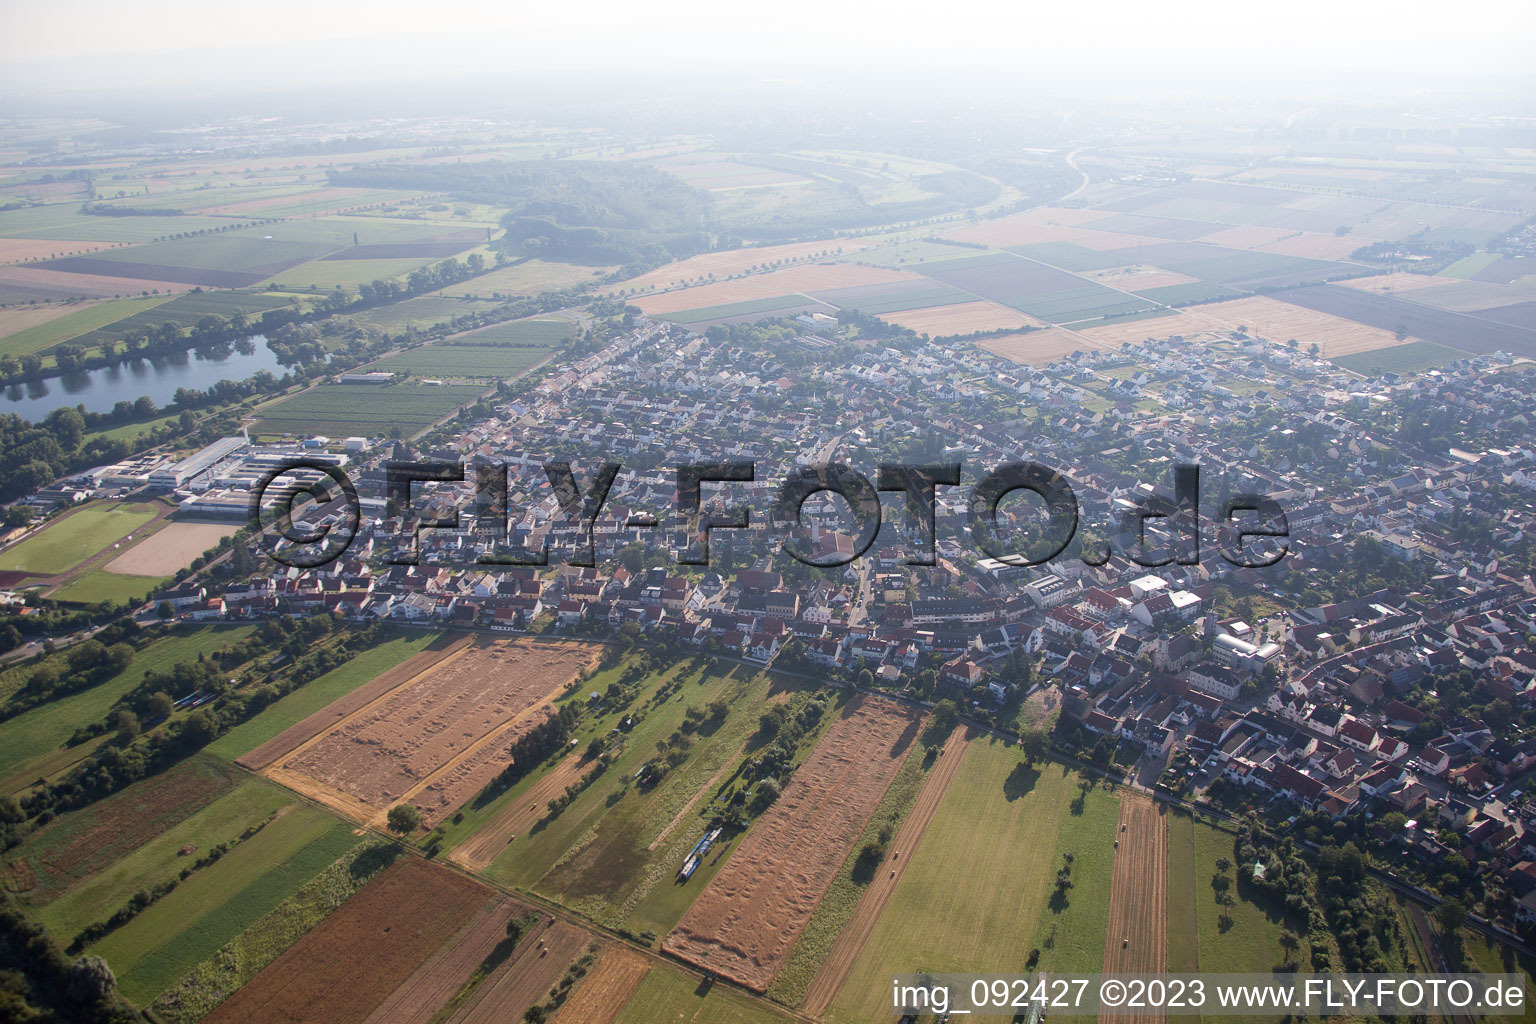 Aerial view of Altlußheim in the state Baden-Wuerttemberg, Germany